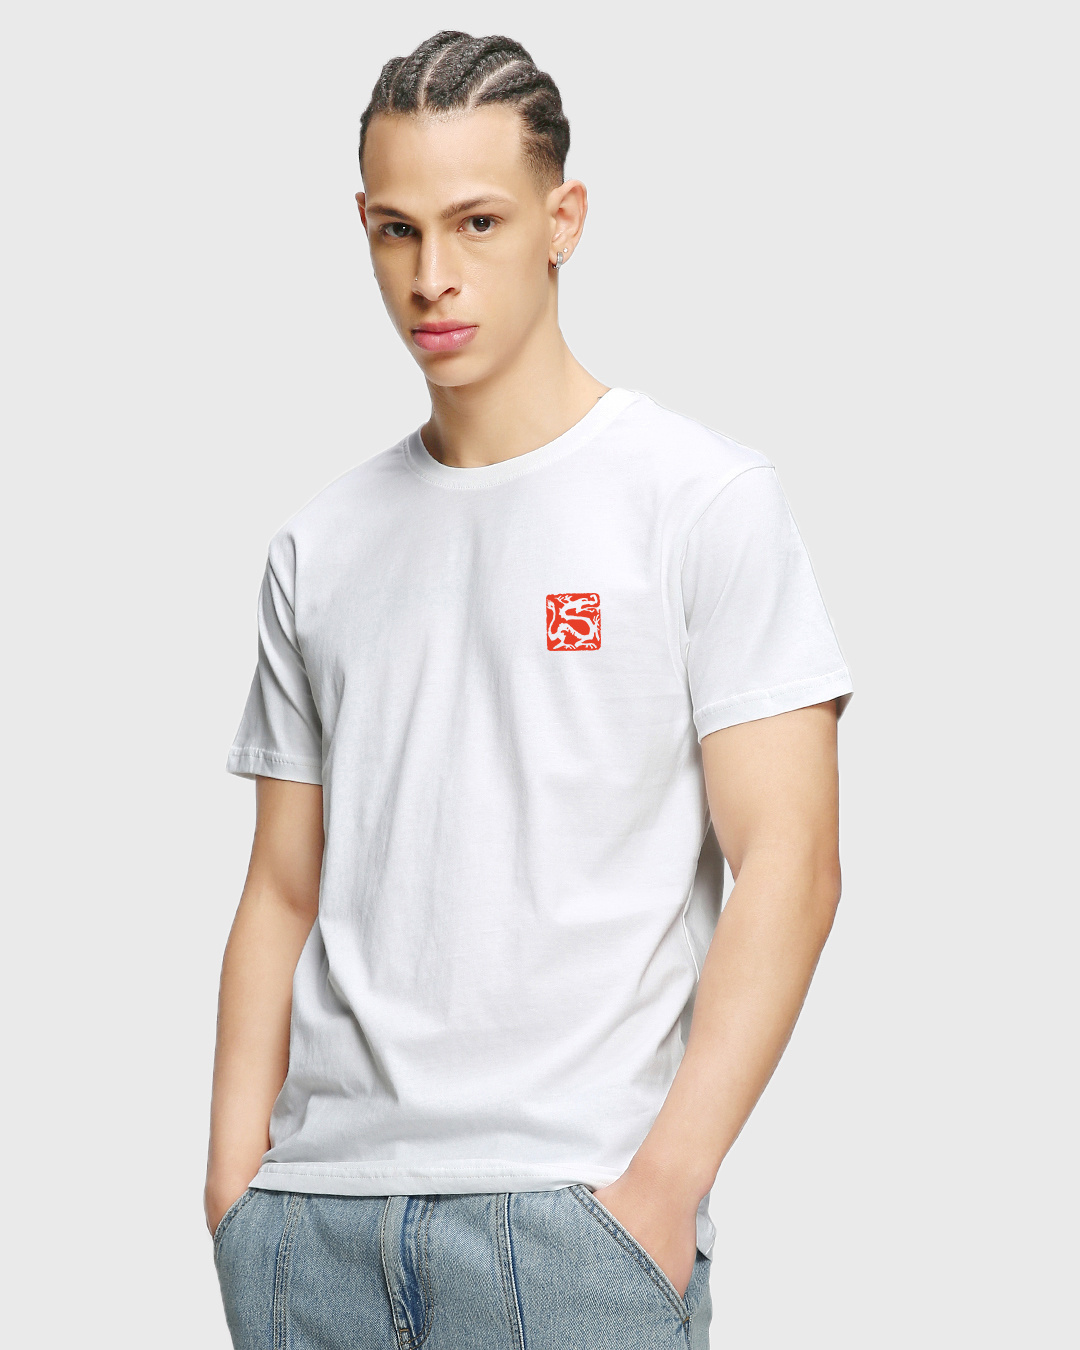 Buy Men's White Ronin Graphic Printed T-shirt Online at Bewakoof